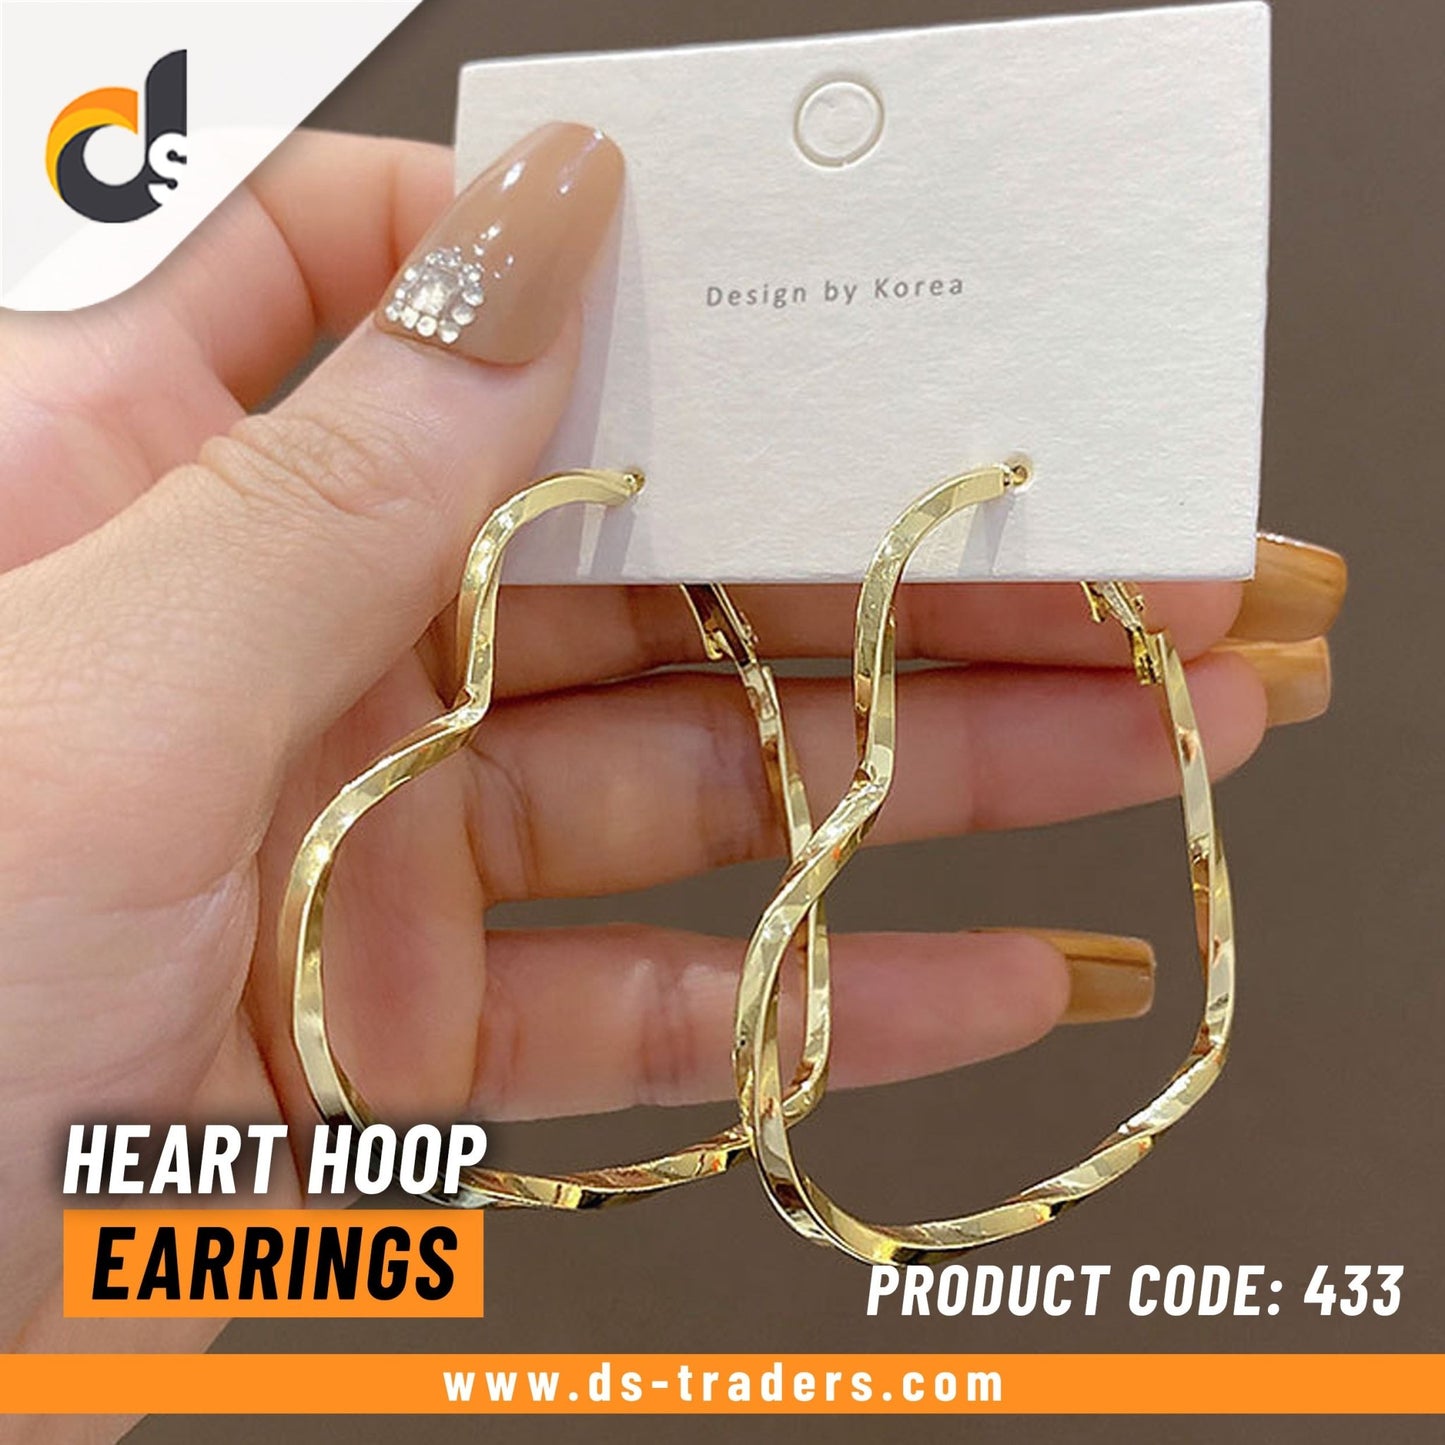 Heart Hoop Earrings - DS Traders